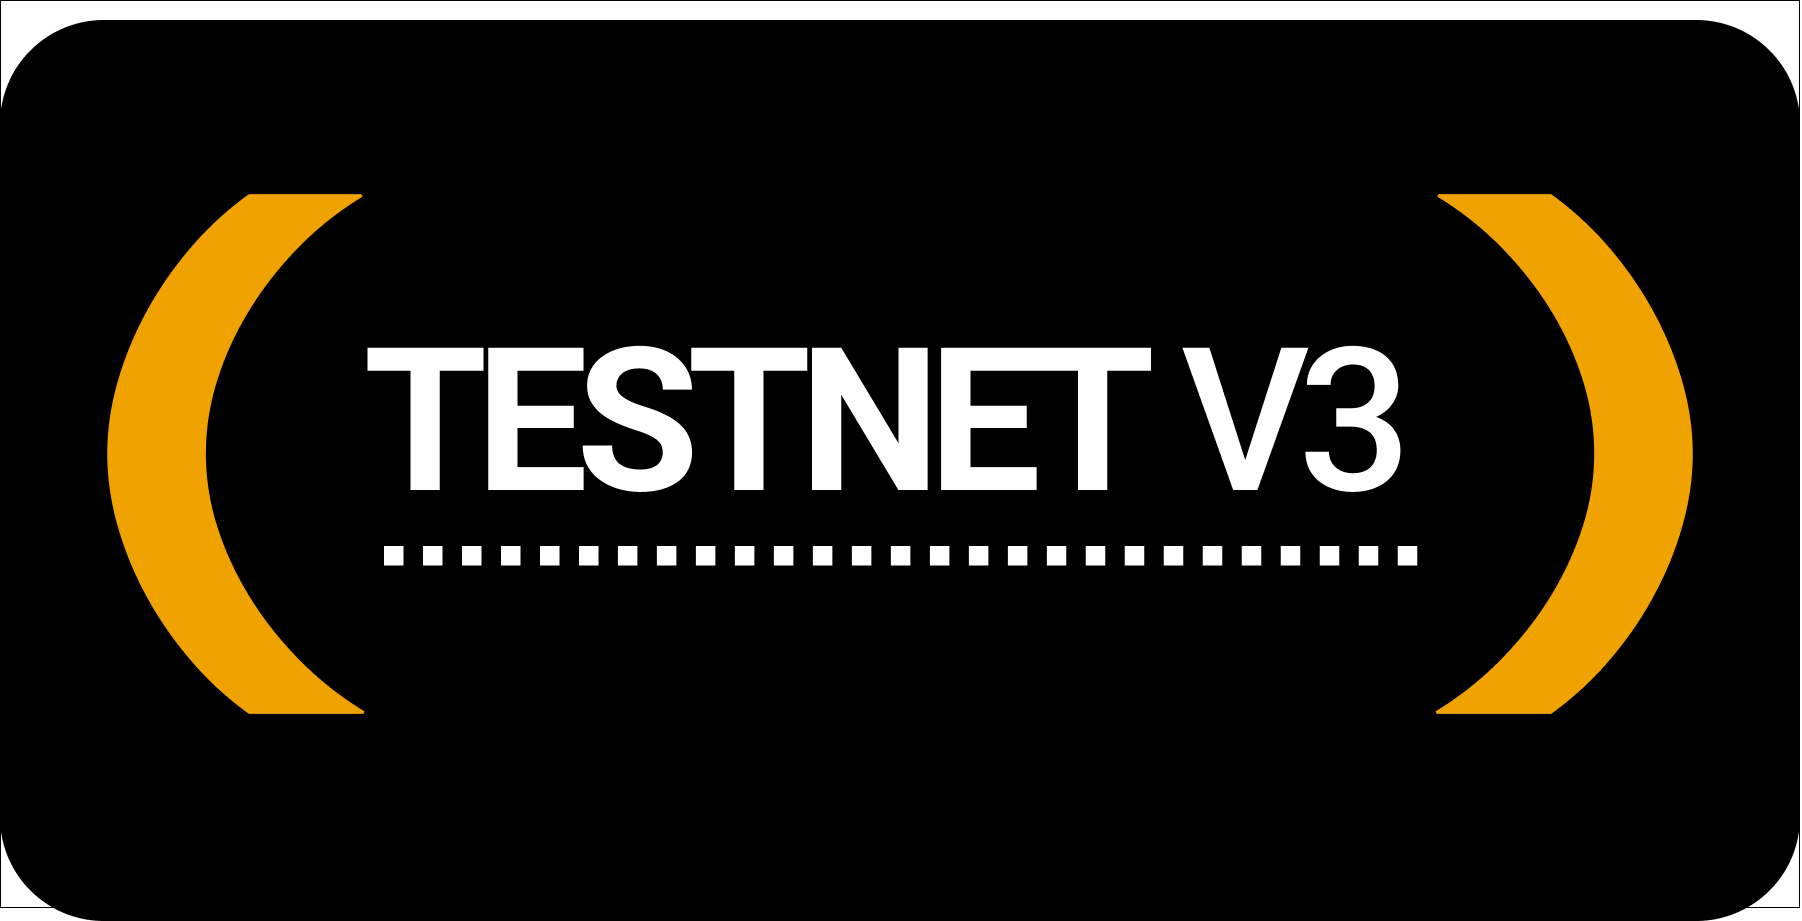 Testnet V3 - Update